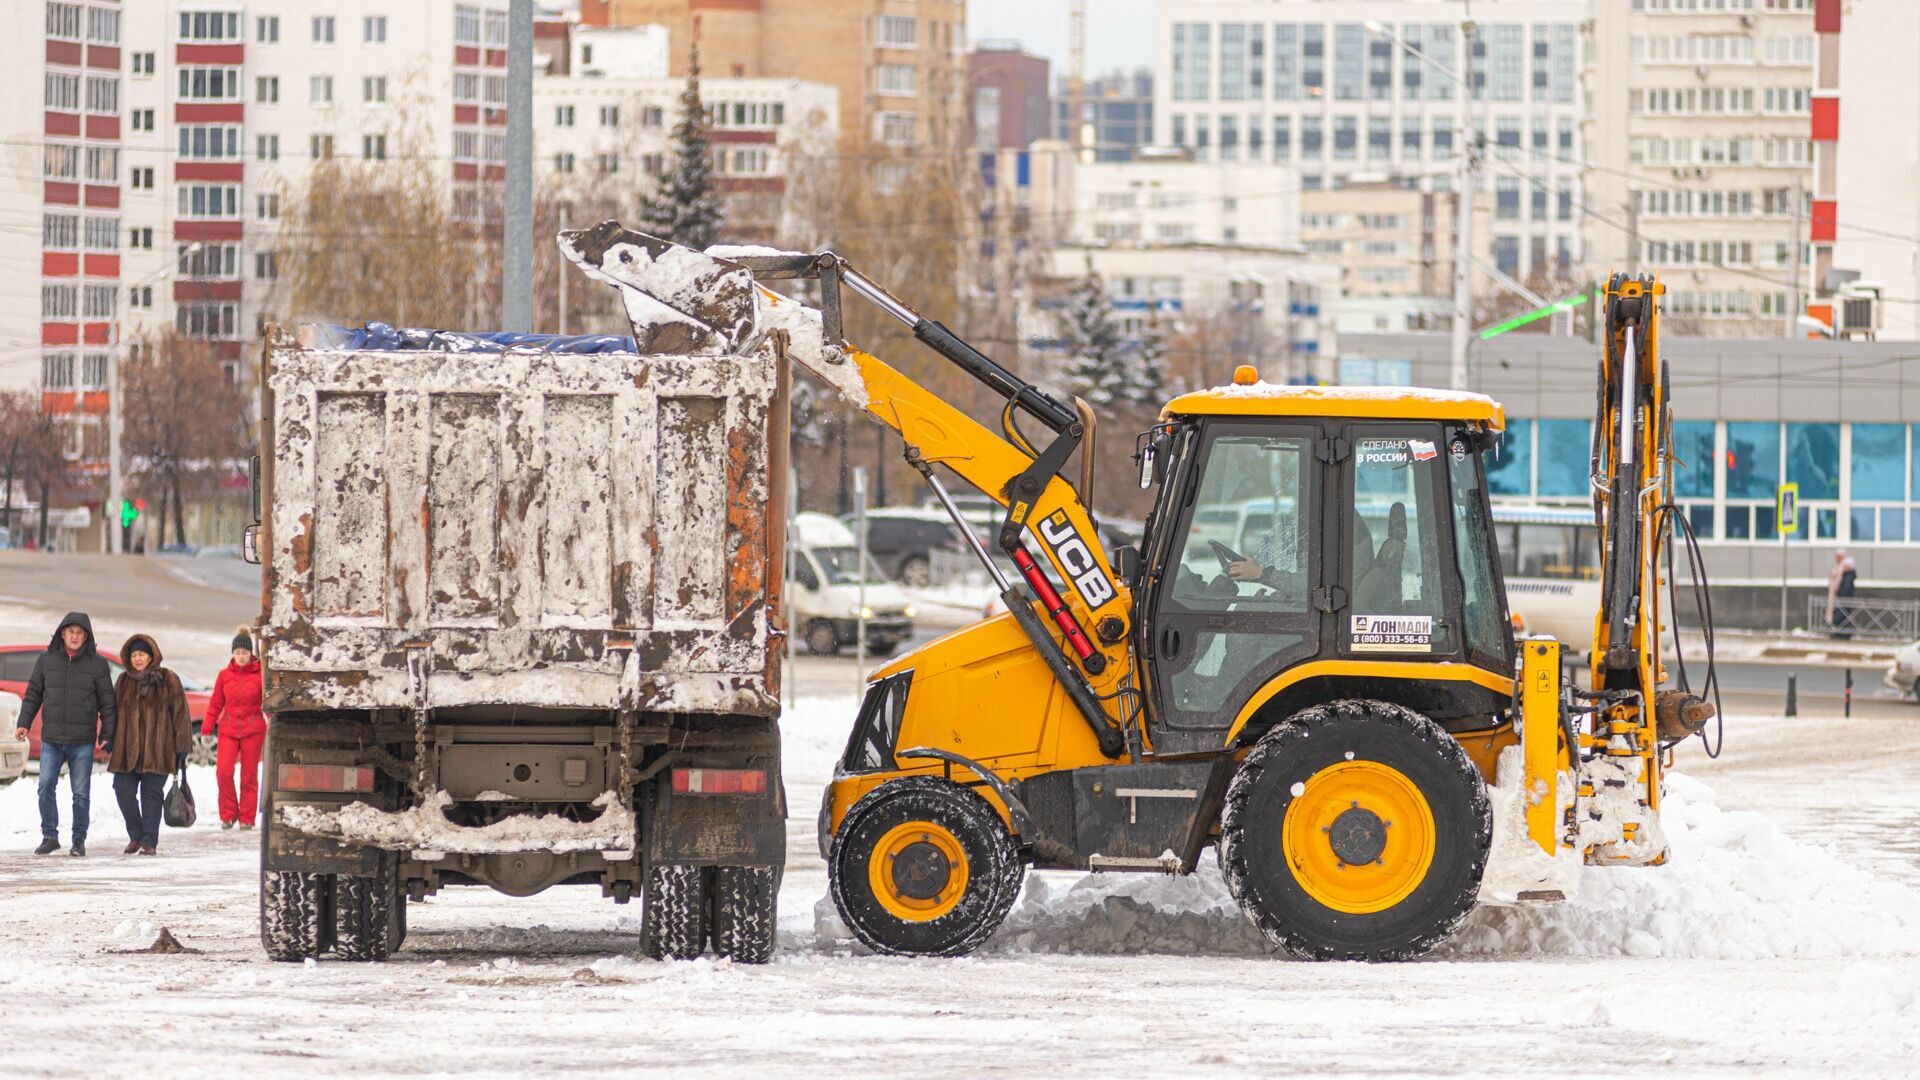 Тысячи работников и сотни машин вывели на улицы Челябинска для борьбы со снегом